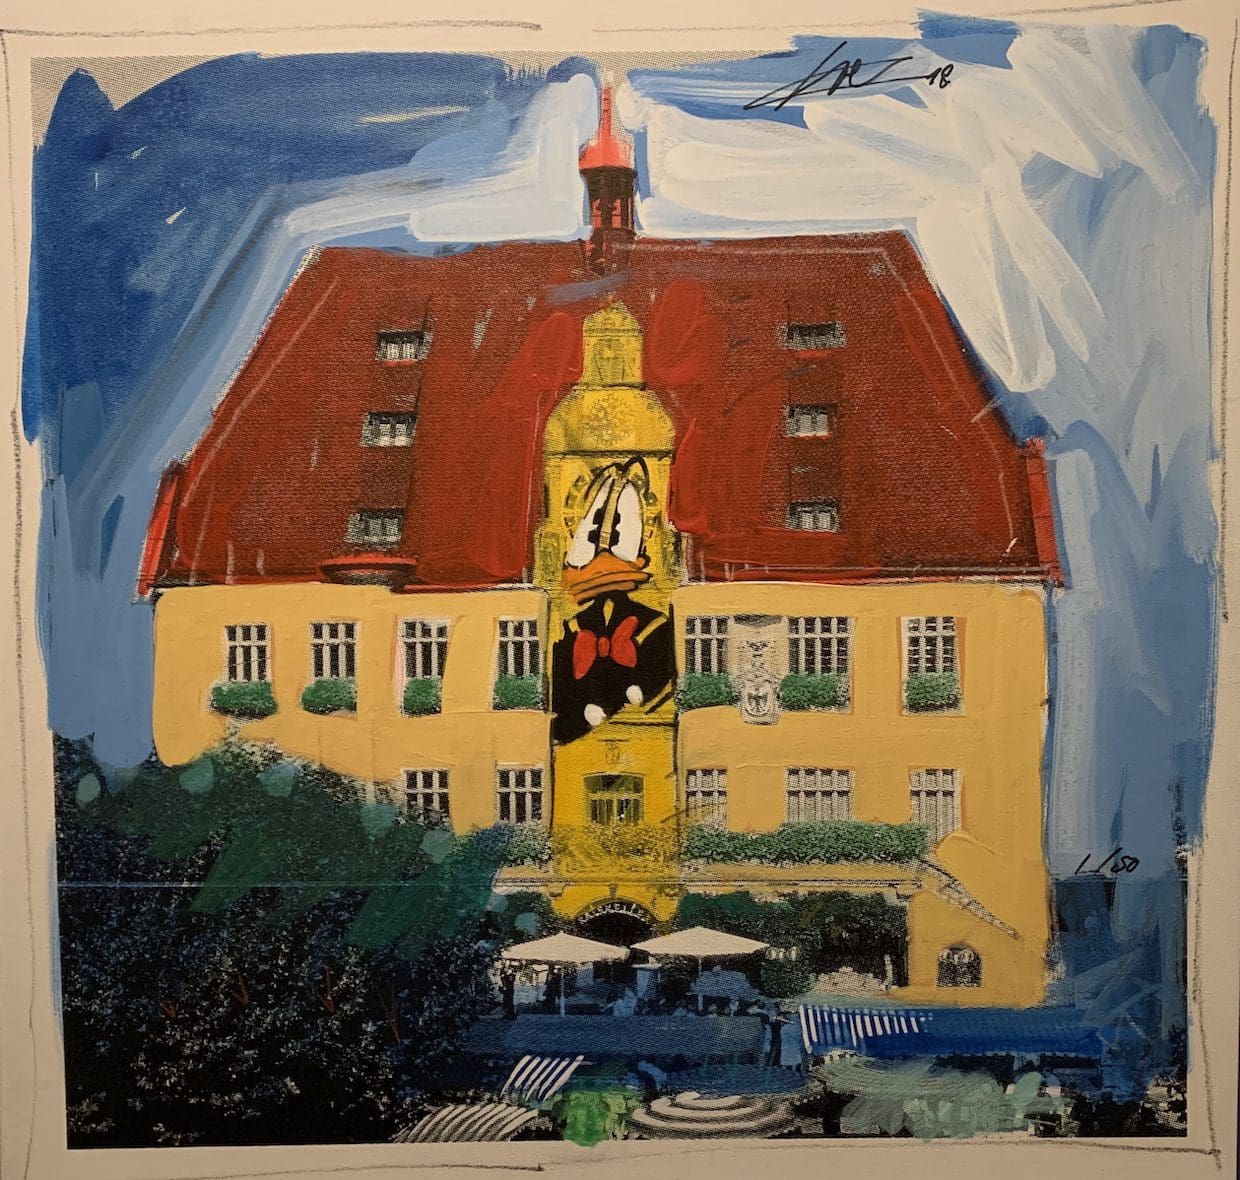 Heilbronn rådhus i akryl av Wolfgang Loesche